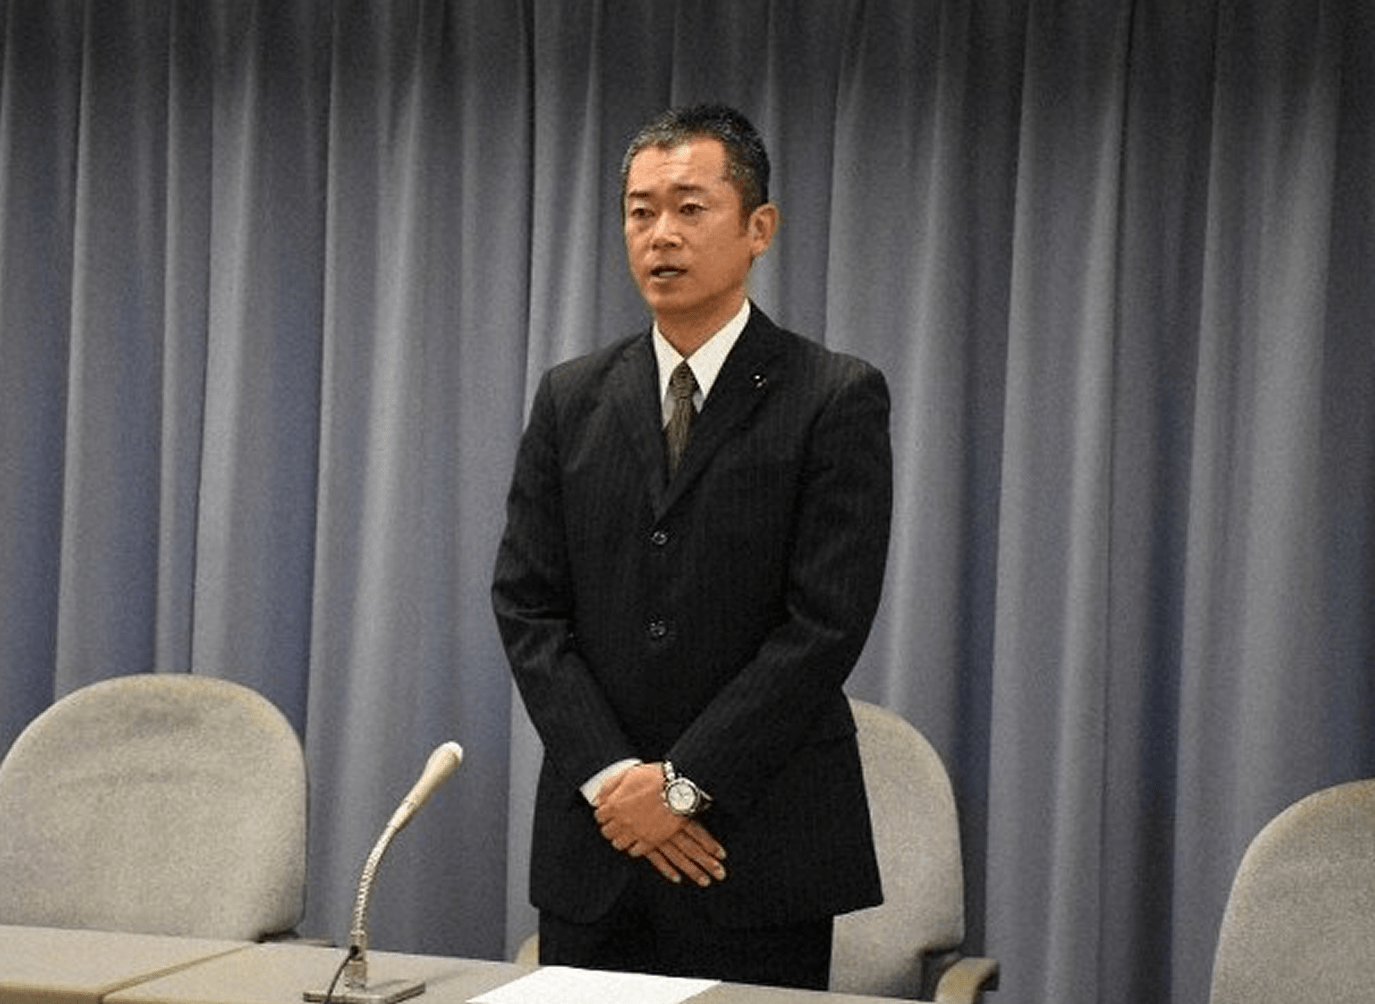 Político pede desculpas após faturar 8,9 milhões de ienes com venda em máscaras on-line